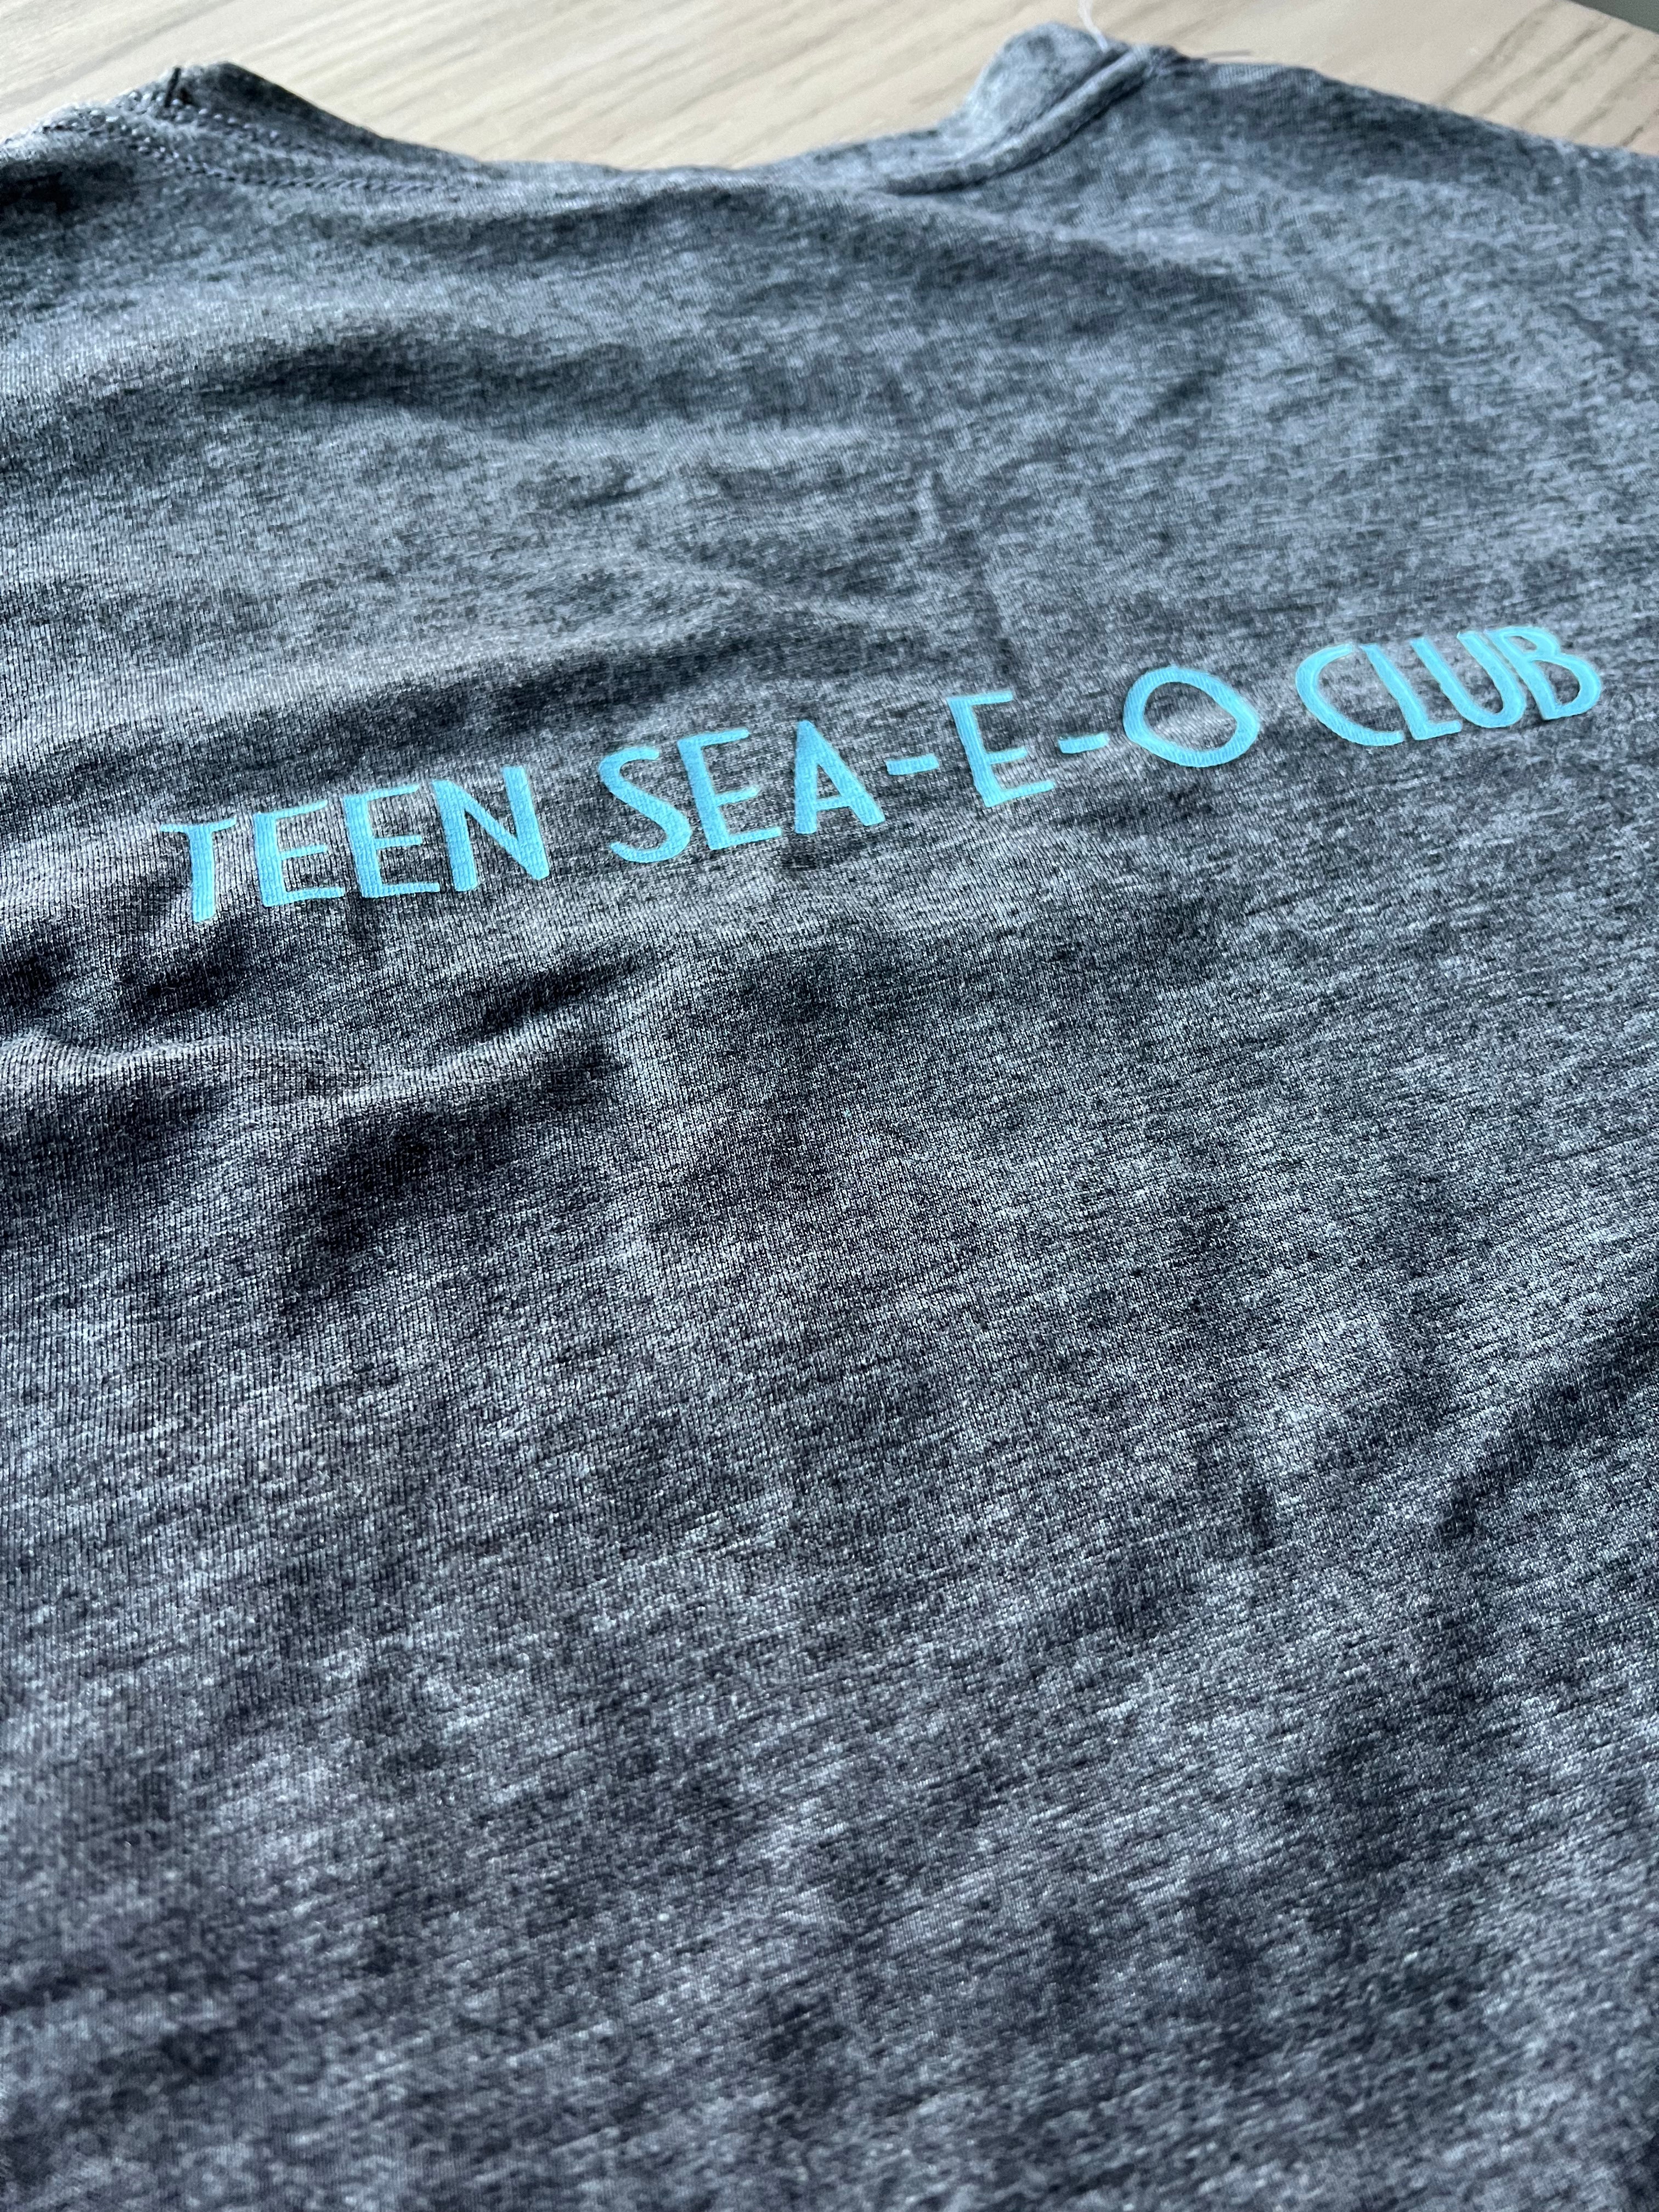 Teen Sea-E-O shirts are here!! - Rain & Hibiscus